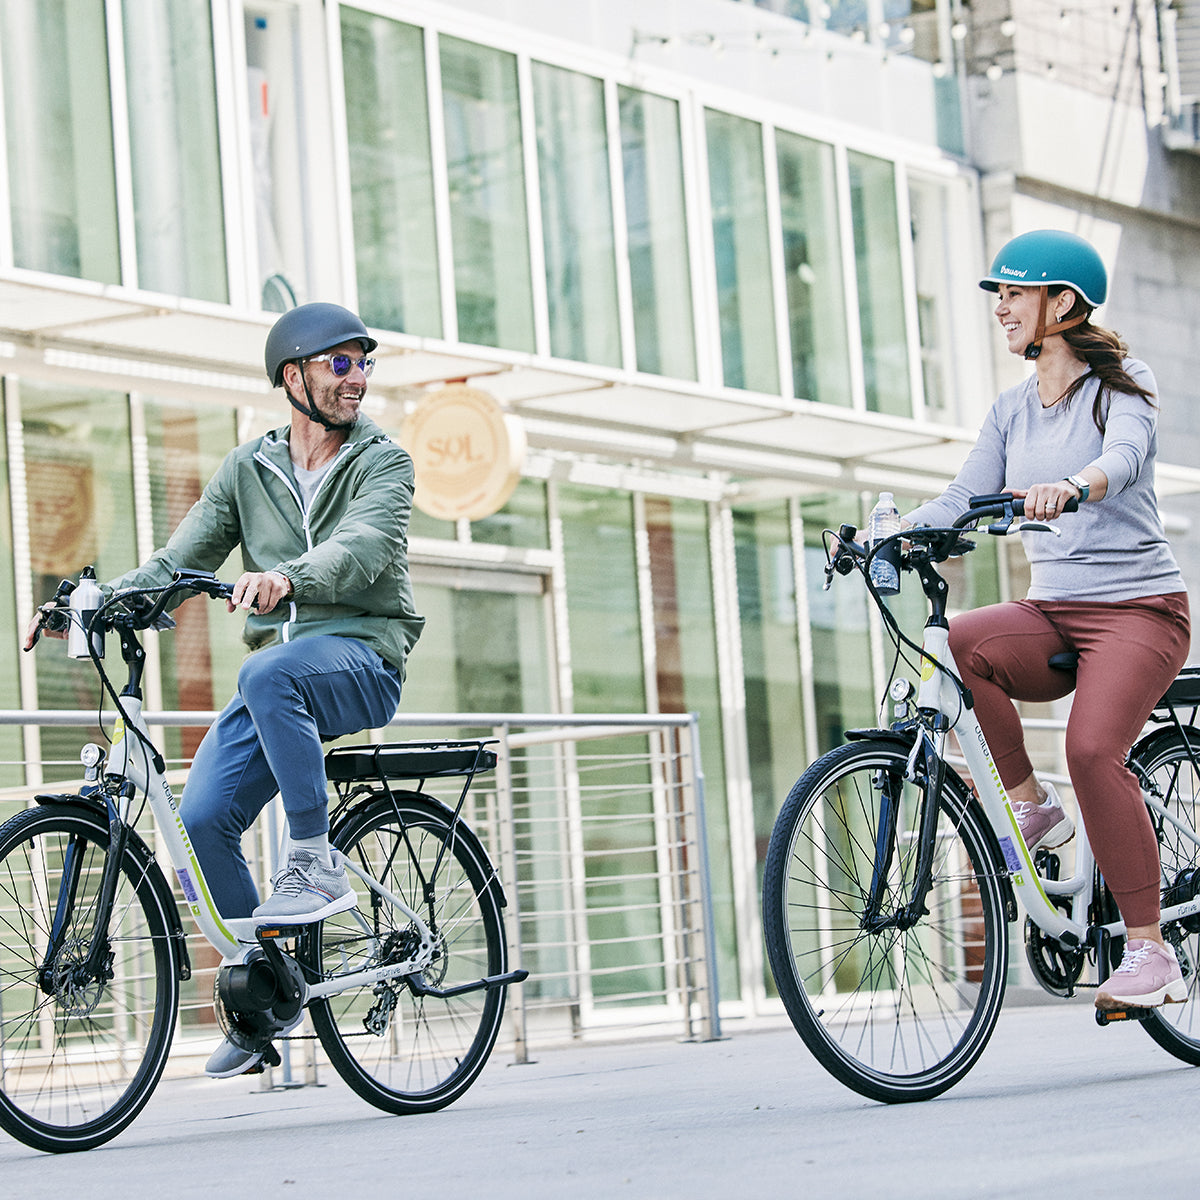 Two riders riding e-bikes through the city